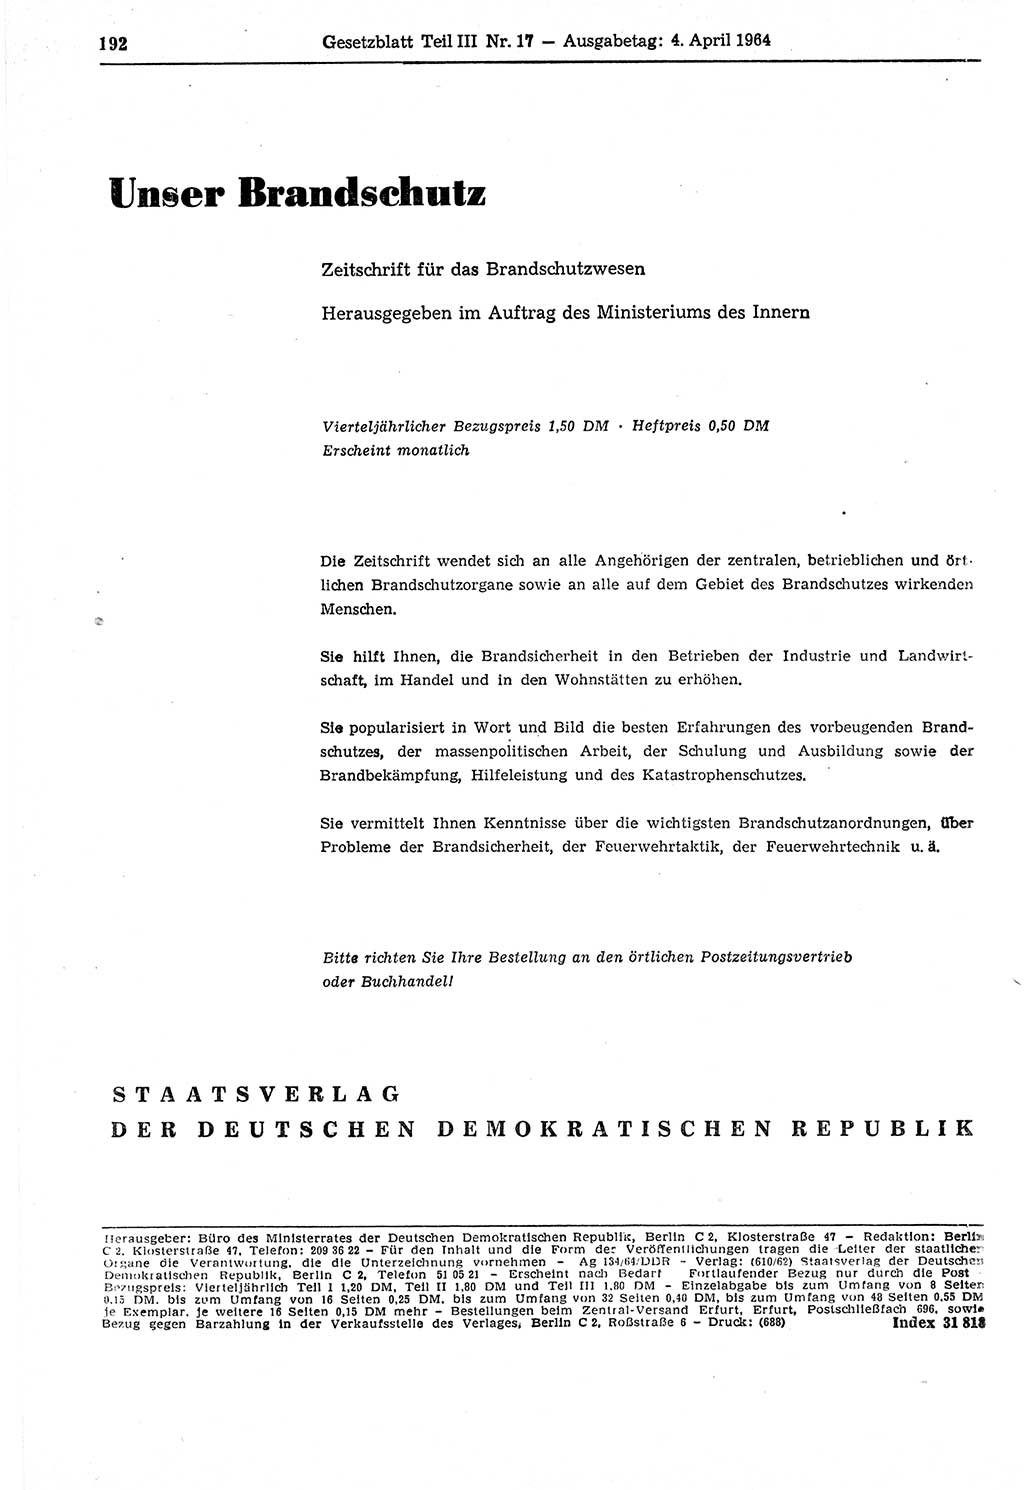 Gesetzblatt (GBl.) der Deutschen Demokratischen Republik (DDR) Teil ⅠⅠⅠ 1964, Seite 192 (GBl. DDR ⅠⅠⅠ 1964, S. 192)